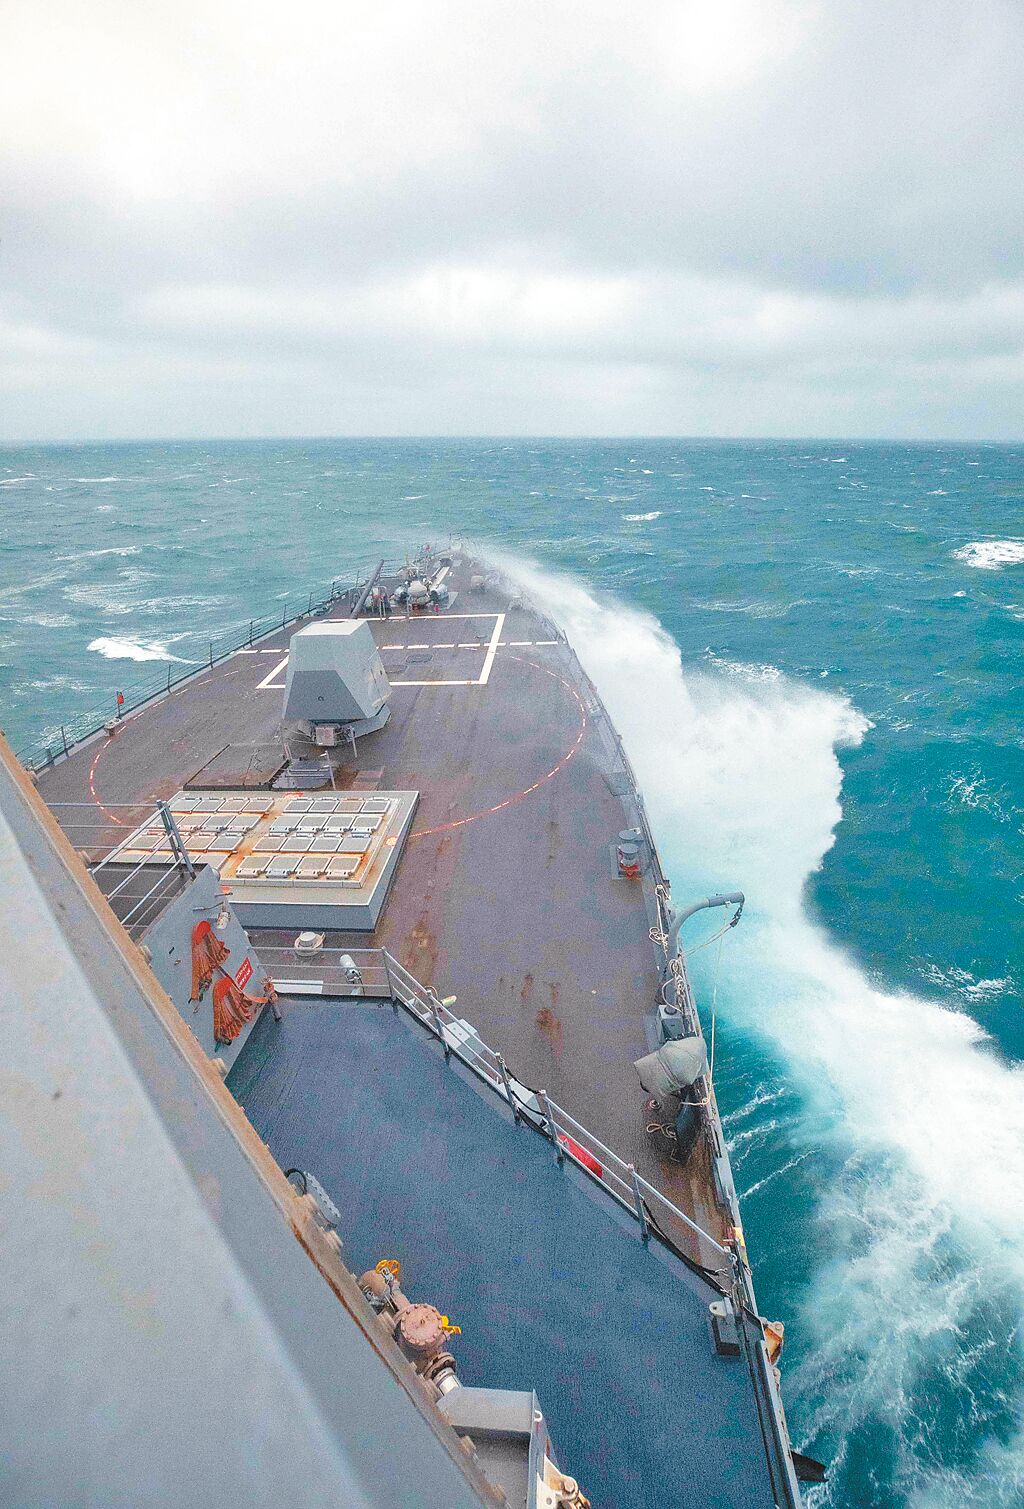 美國海軍勃克級神盾驅逐艦鍾雲號（USS Chung-Hoon， DDG-93）5日通過台灣海峽。（摘自美國海軍第七艦隊官網）